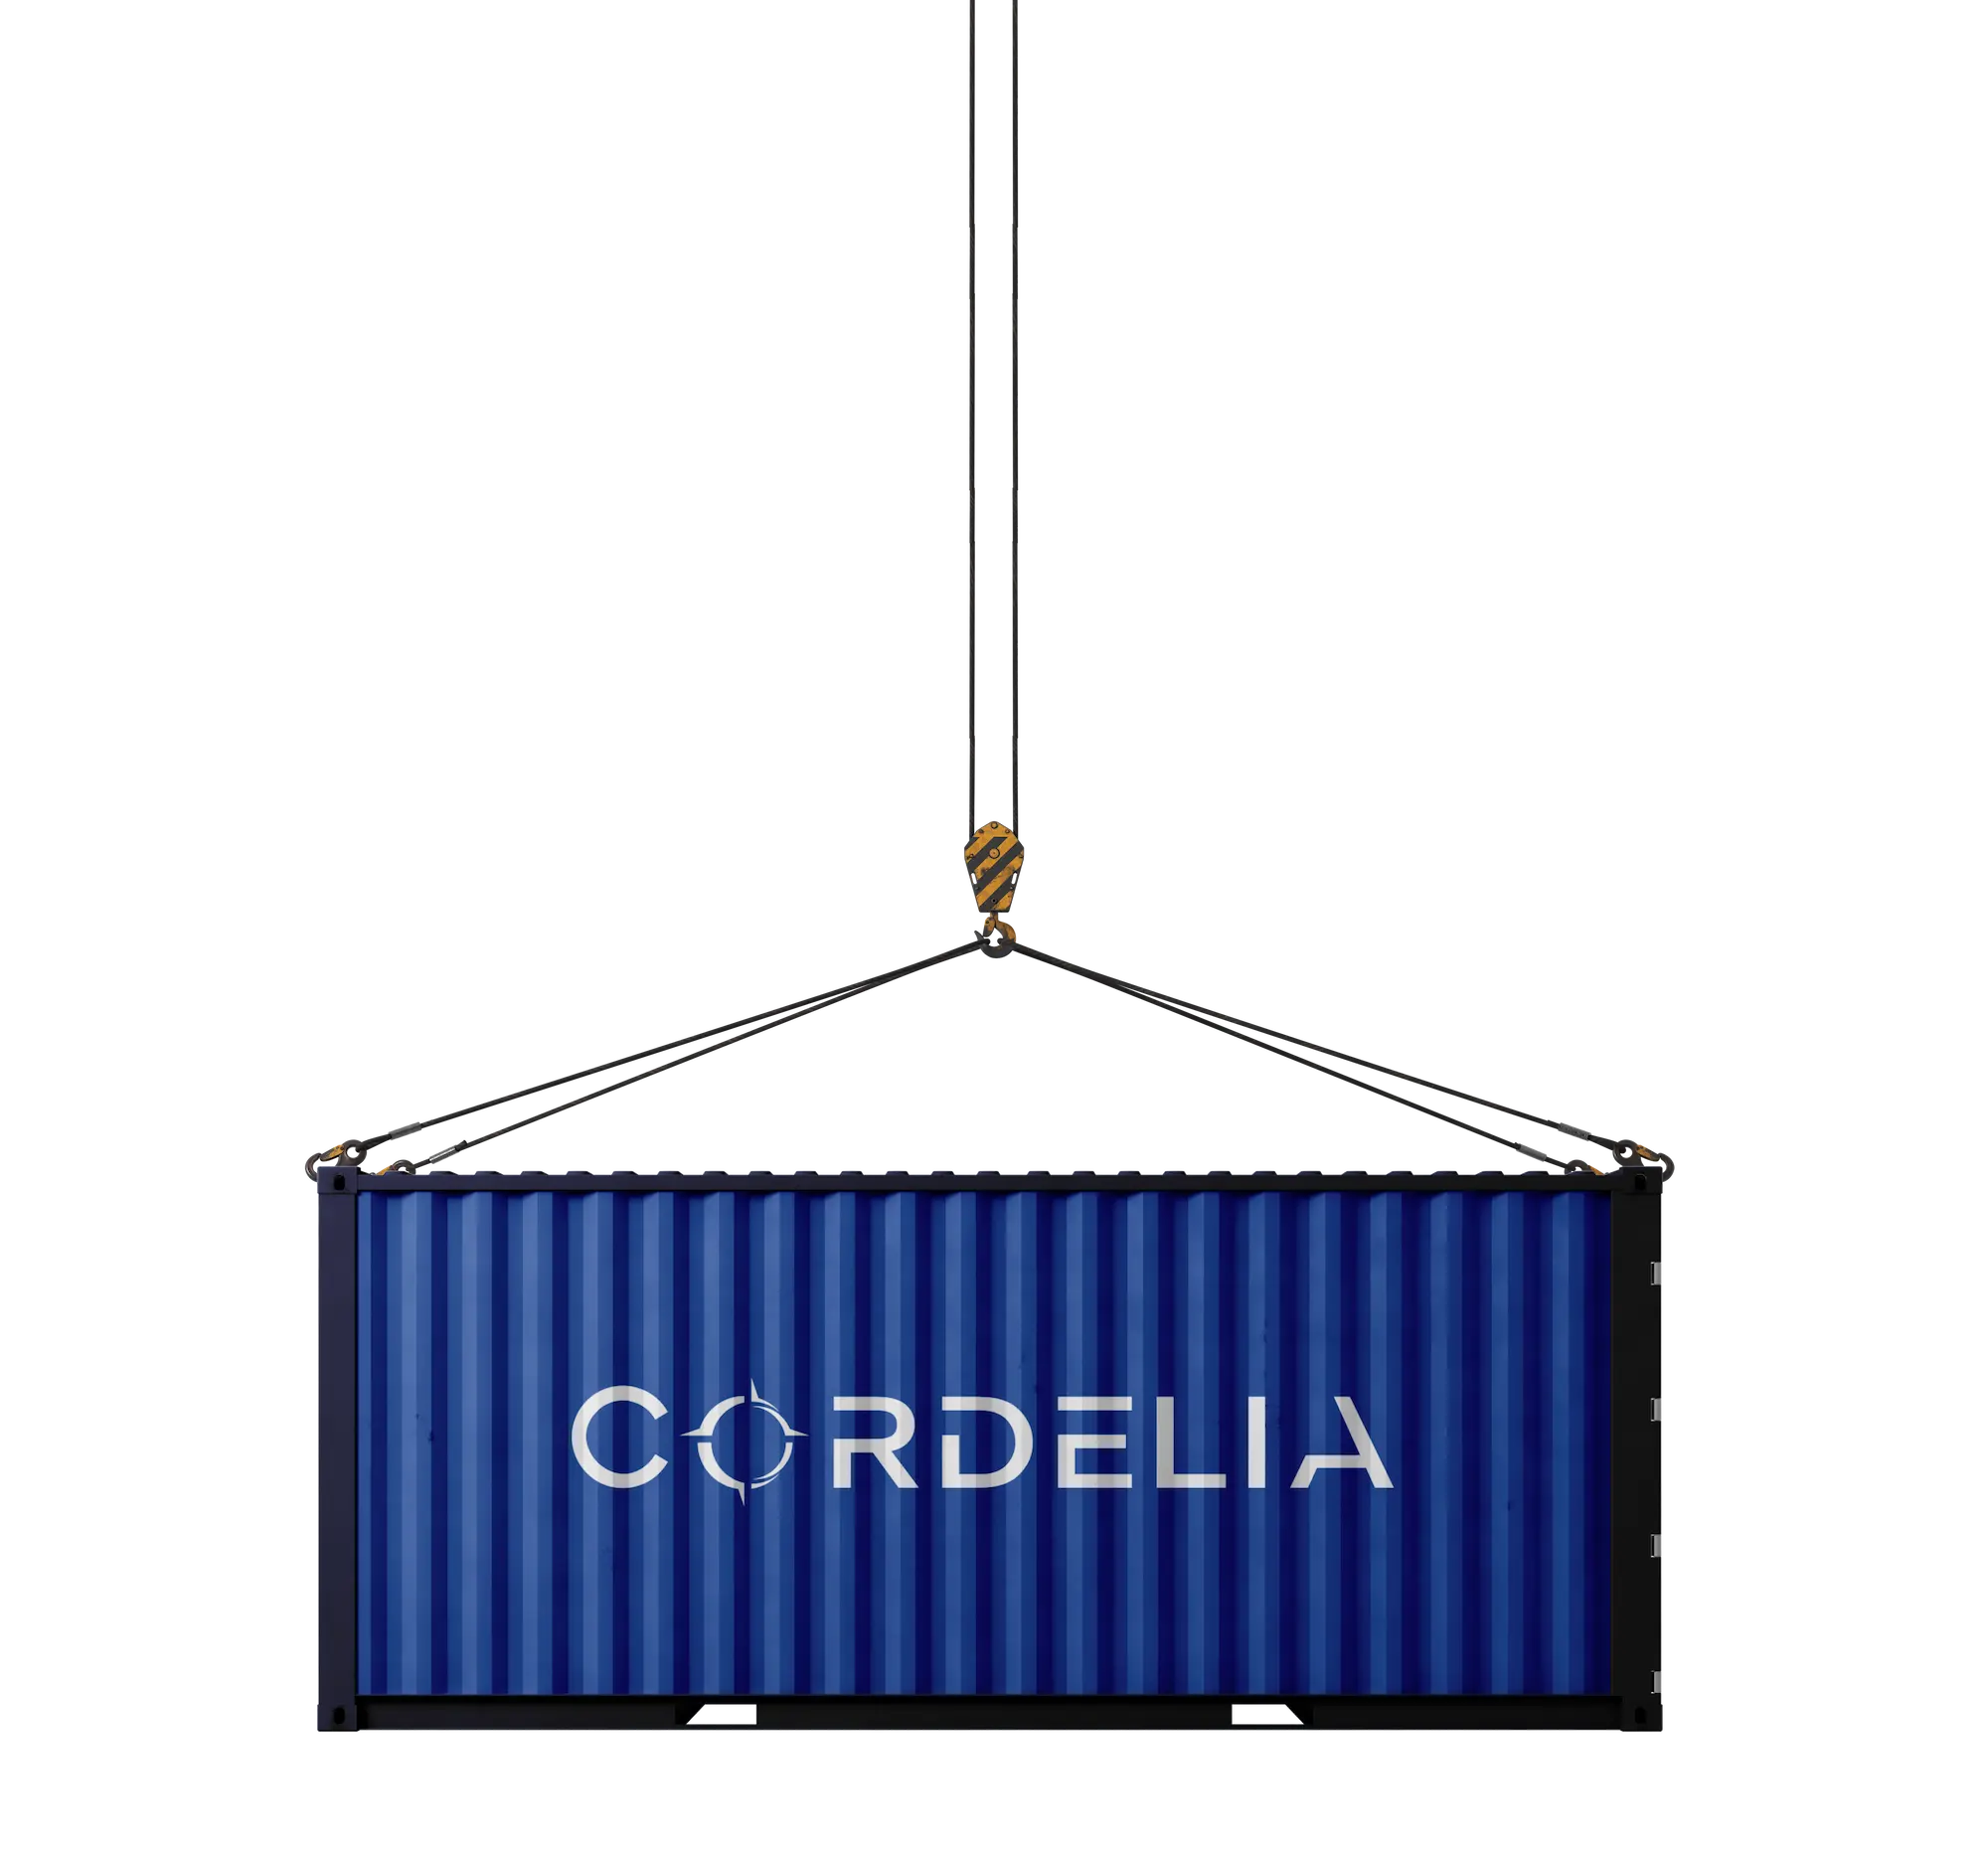 Cordelia LLC Container